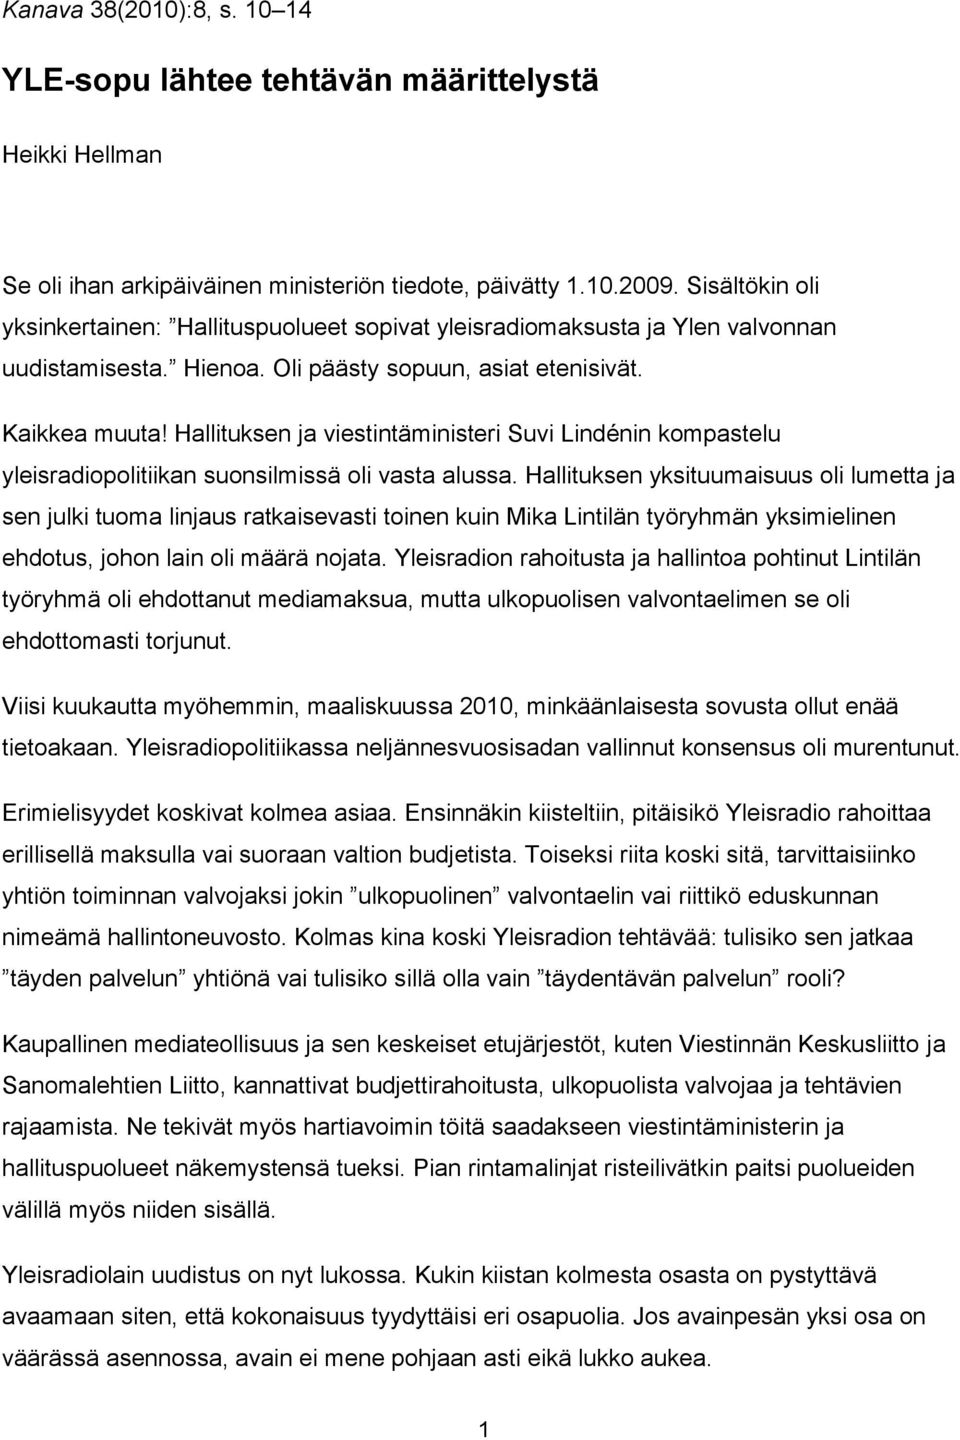 Hallituksen ja viestintäministeri Suvi Lindénin kompastelu yleisradiopolitiikan suonsilmissä oli vasta alussa.